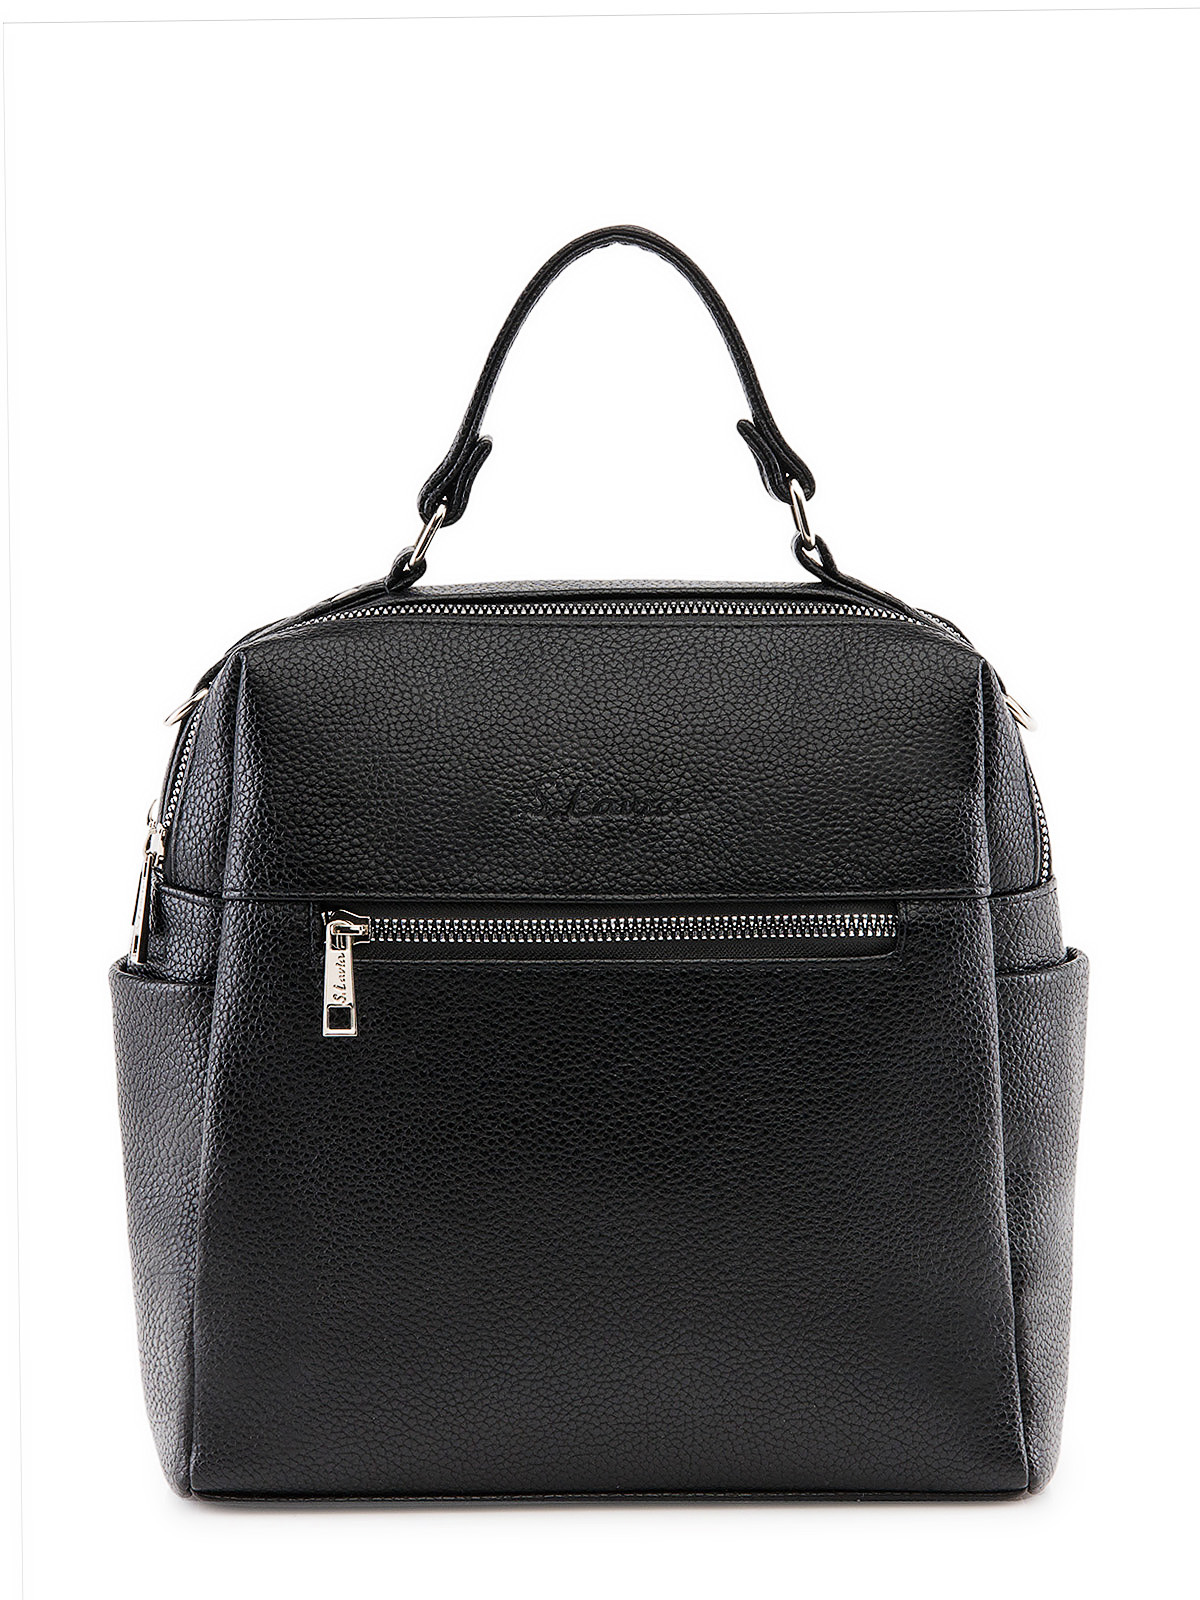 Сумка-рюкзак женская S.Lavia 1376 902 01 черная, 27x24x10,5 см